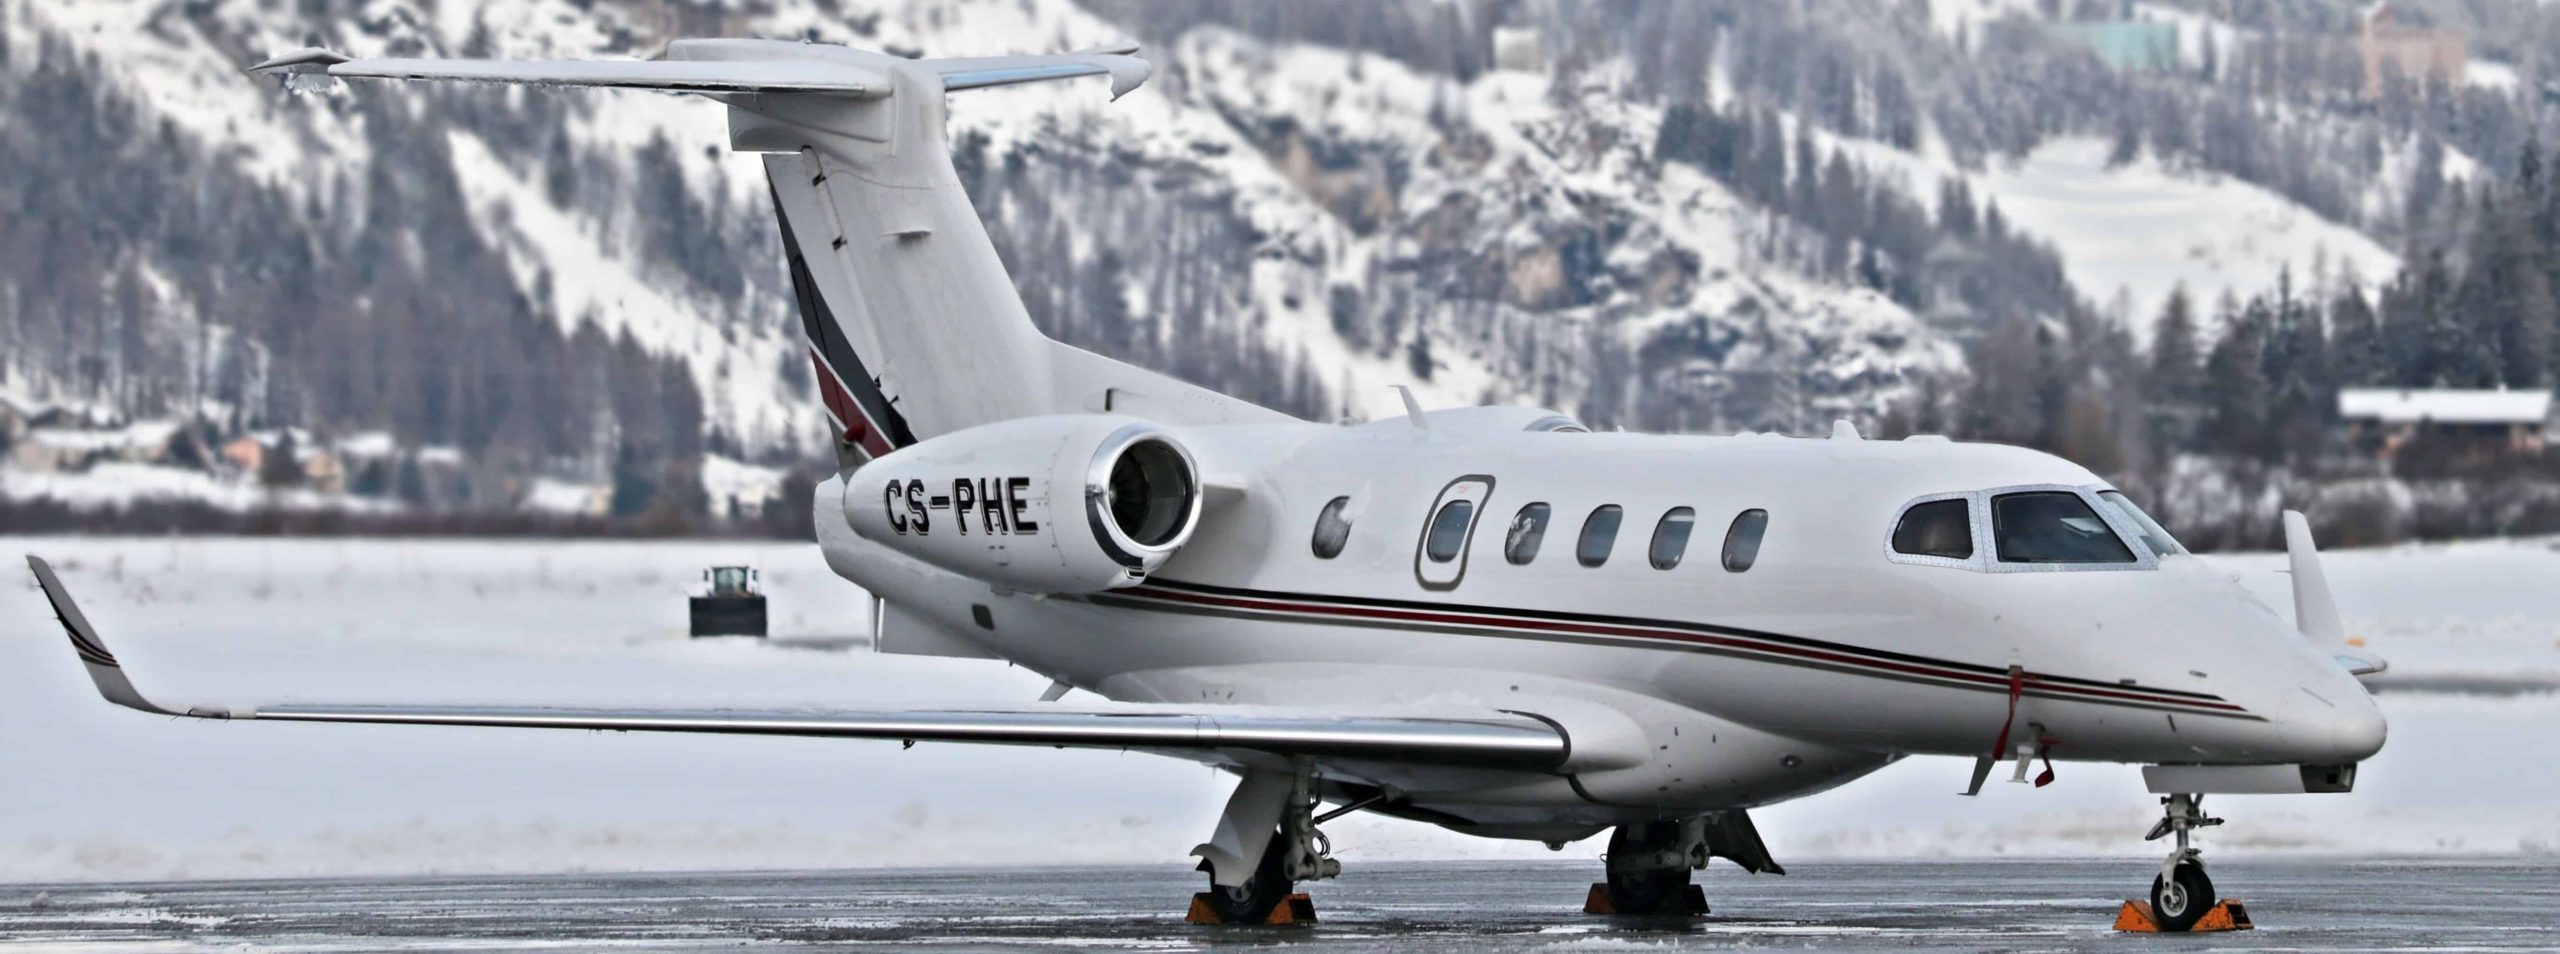 Louer un jet privé vers une station de ski en hiver